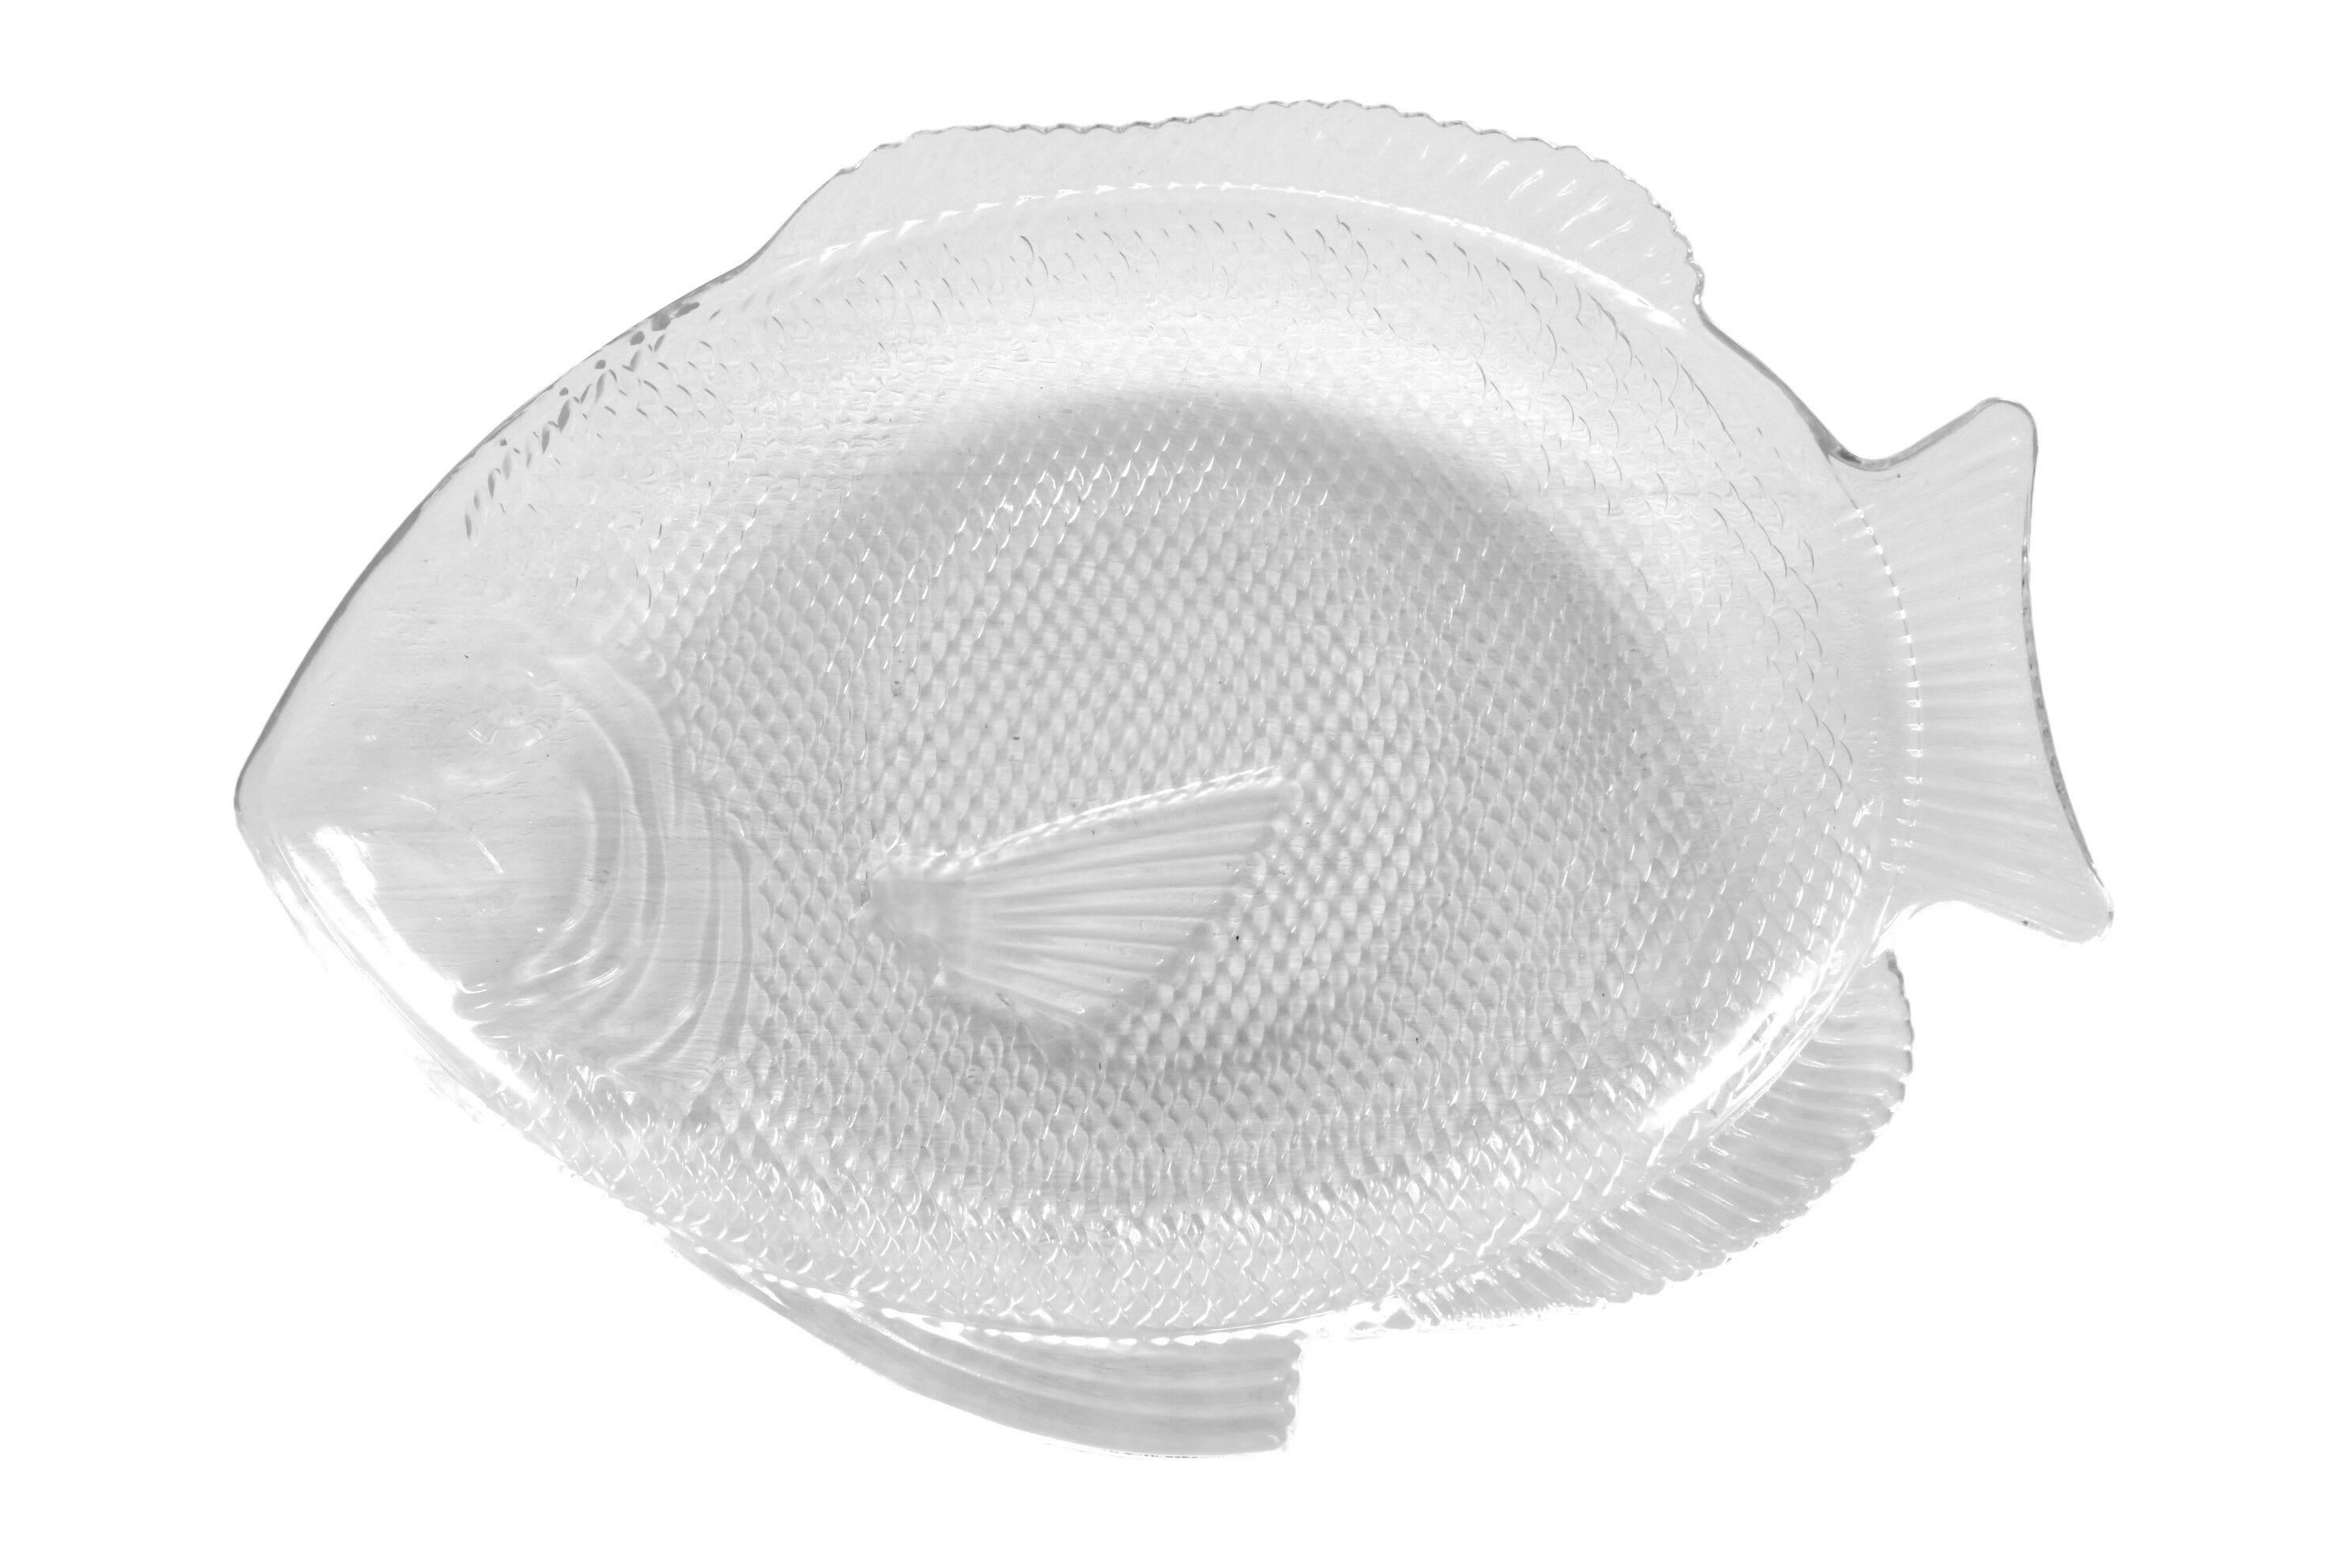 Un plat en verre transparent en forme de poisson. Pressé avec des écailles et des lignes pour montrer les détails tels que les yeux et la bouche sur la tête et des lignes pour montrer les nageoires. Marqué en dessous 